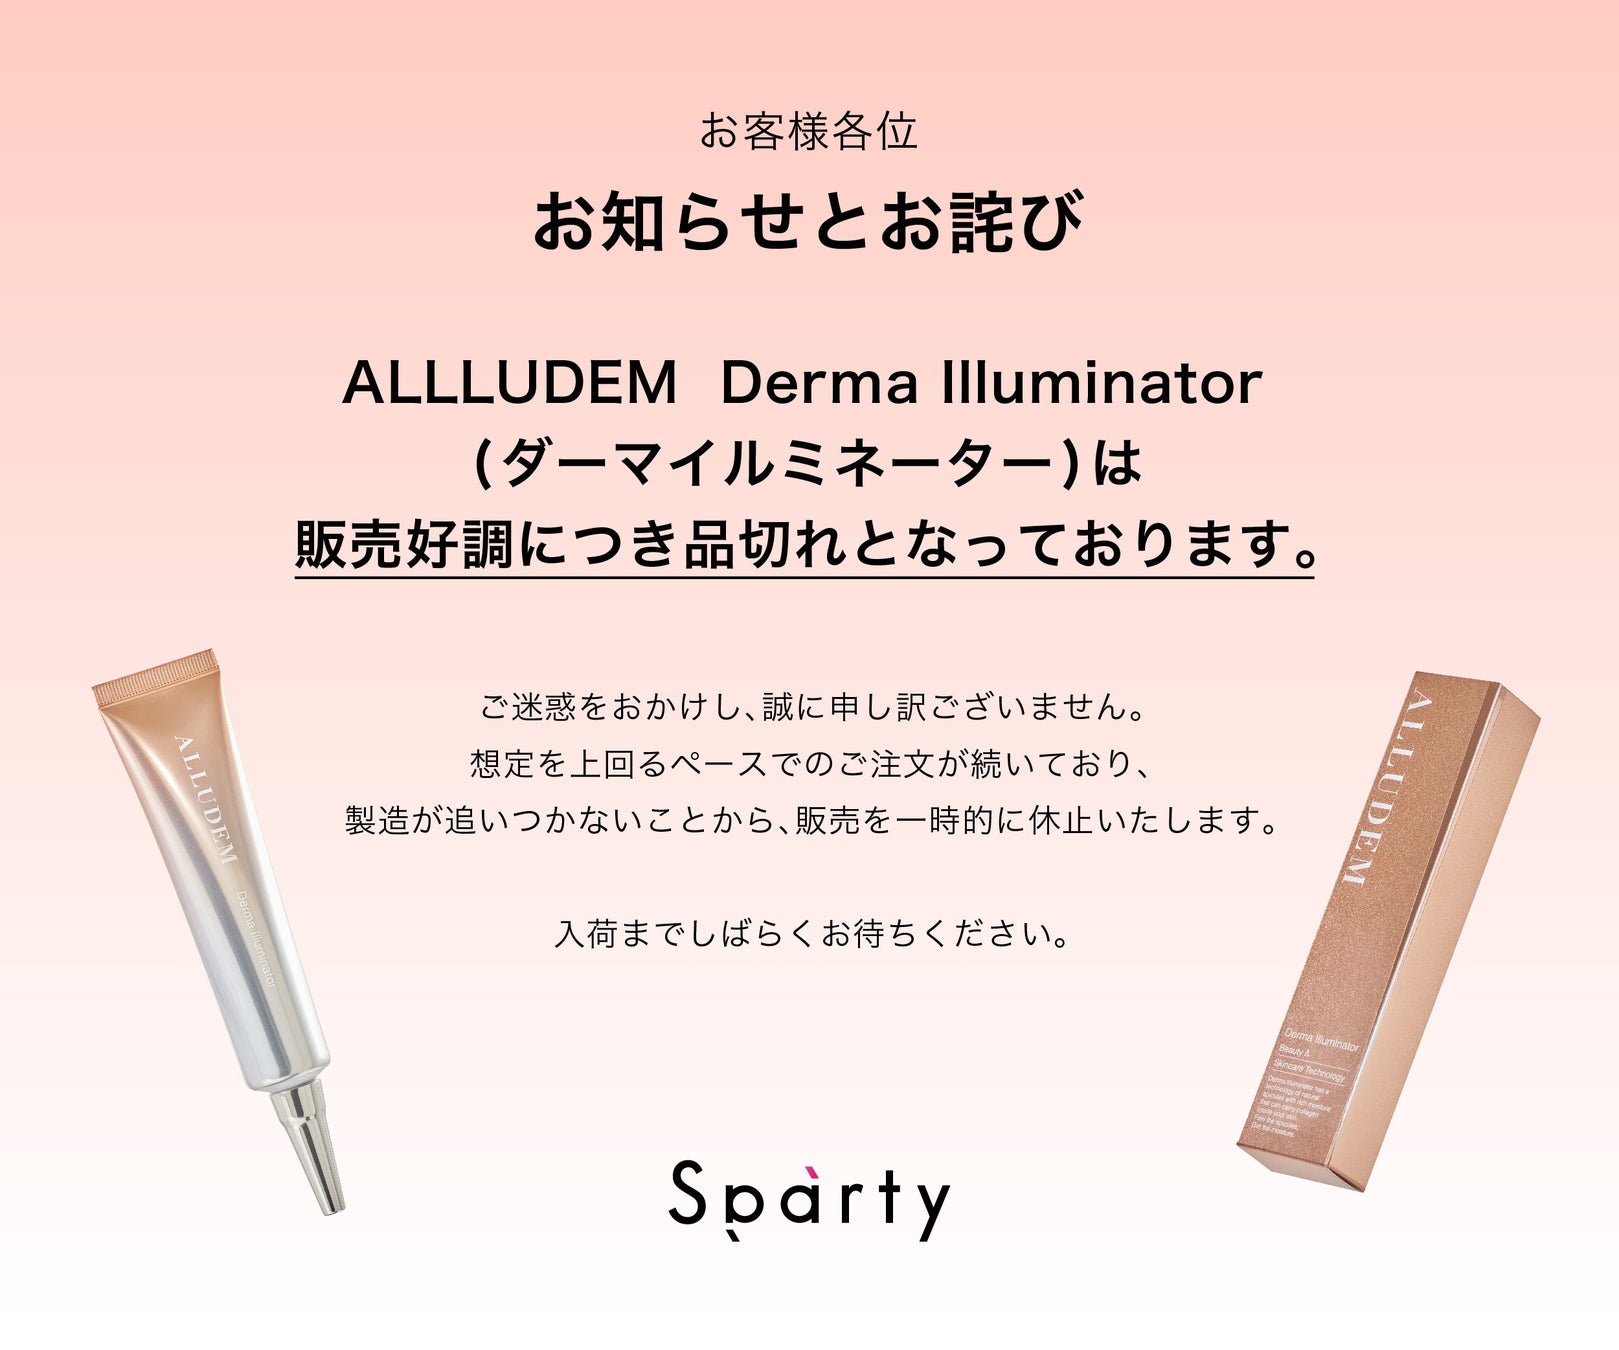 【日本で唯一】認知症予防を“美容”からアプローチ